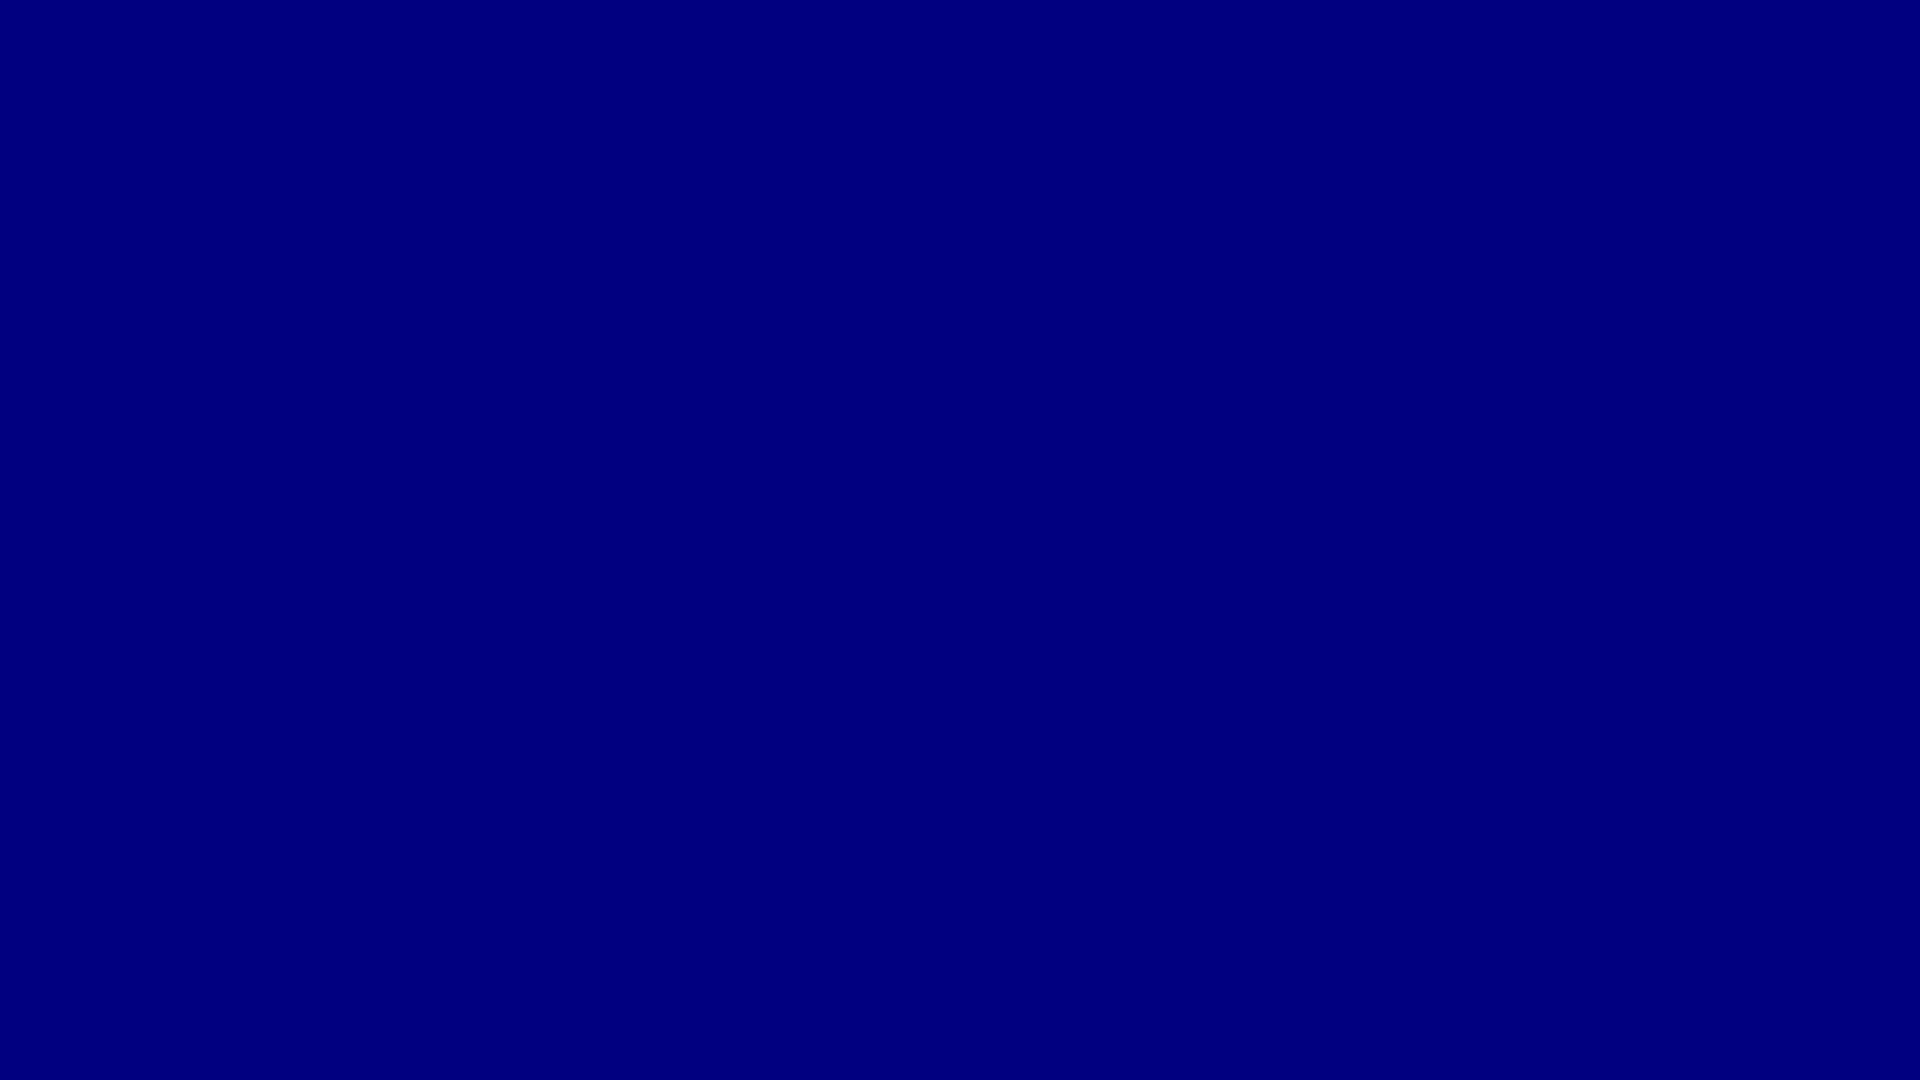 1920x1080 Navy Blue Wallpapers Plain Wallpaper 7629